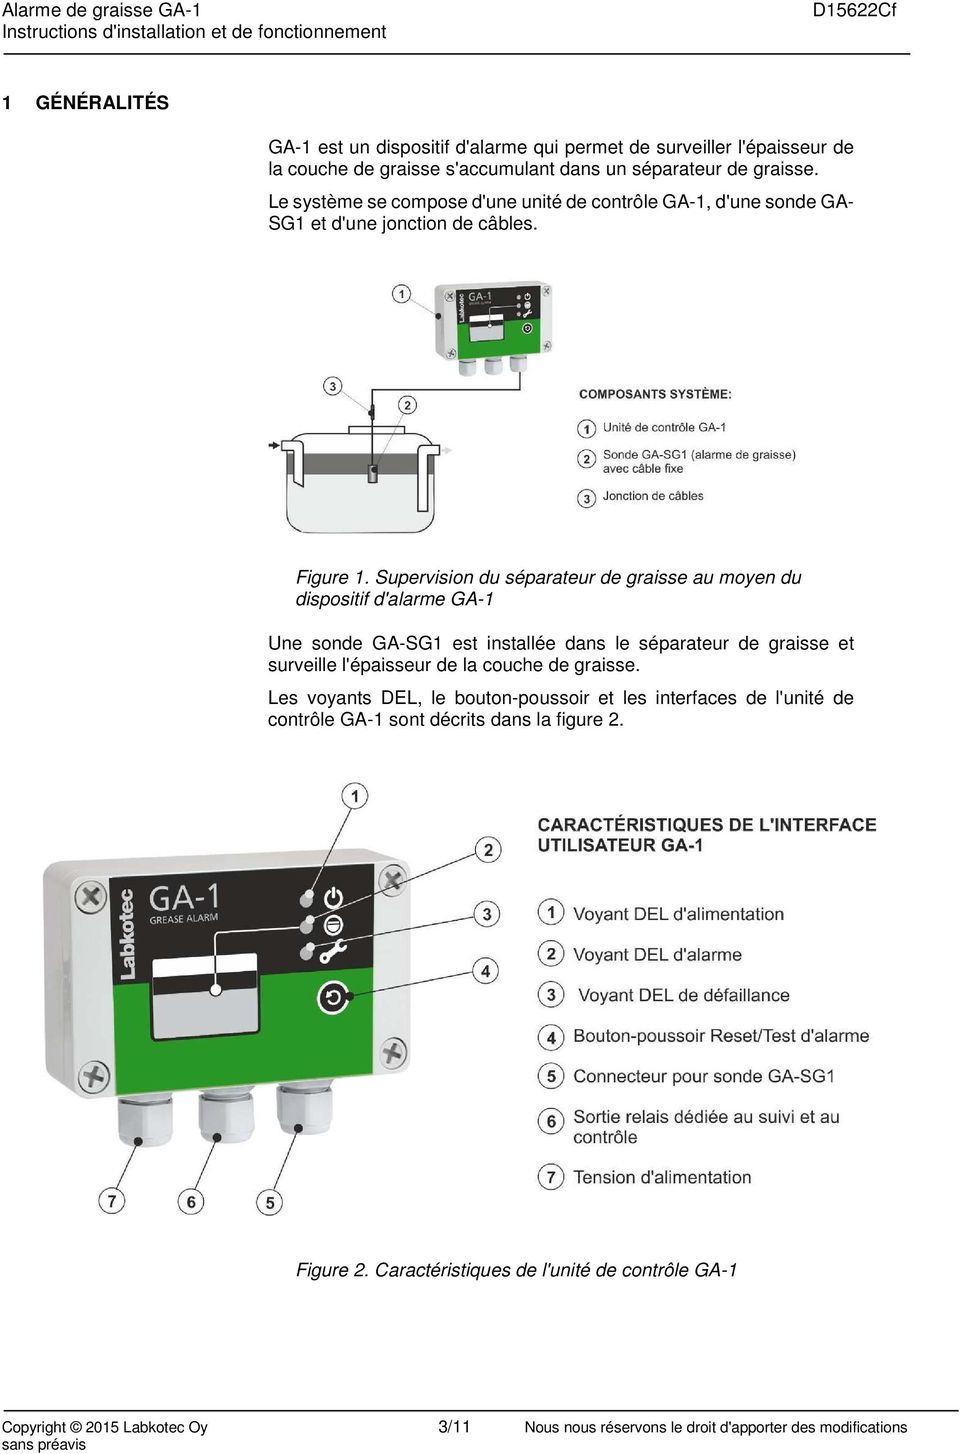 Supervision du séparateur de graisse au moyen du dispositif d'alarme GA-1 Une sonde GA-SG1 est installée dans le séparateur de graisse et surveille l'épaisseur de la couche de